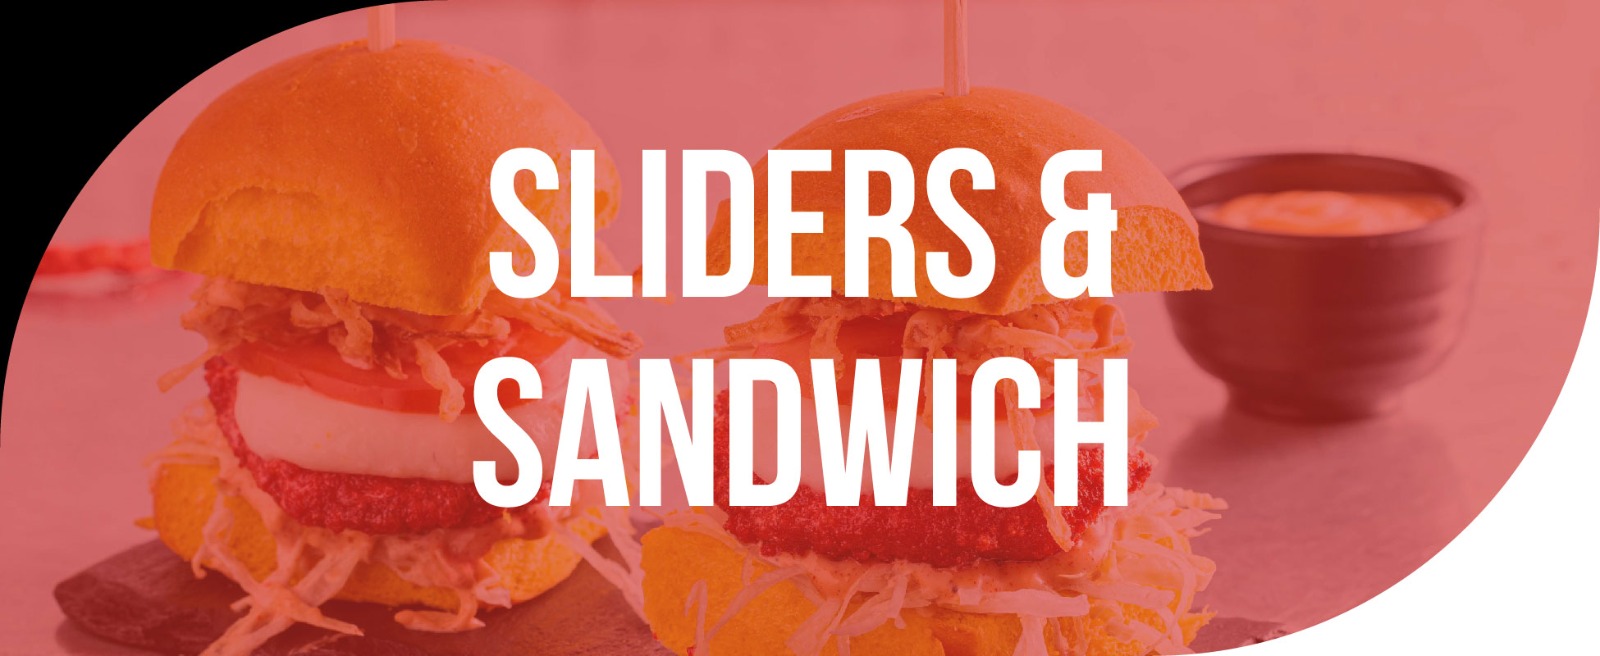 Sliders & Sandwich